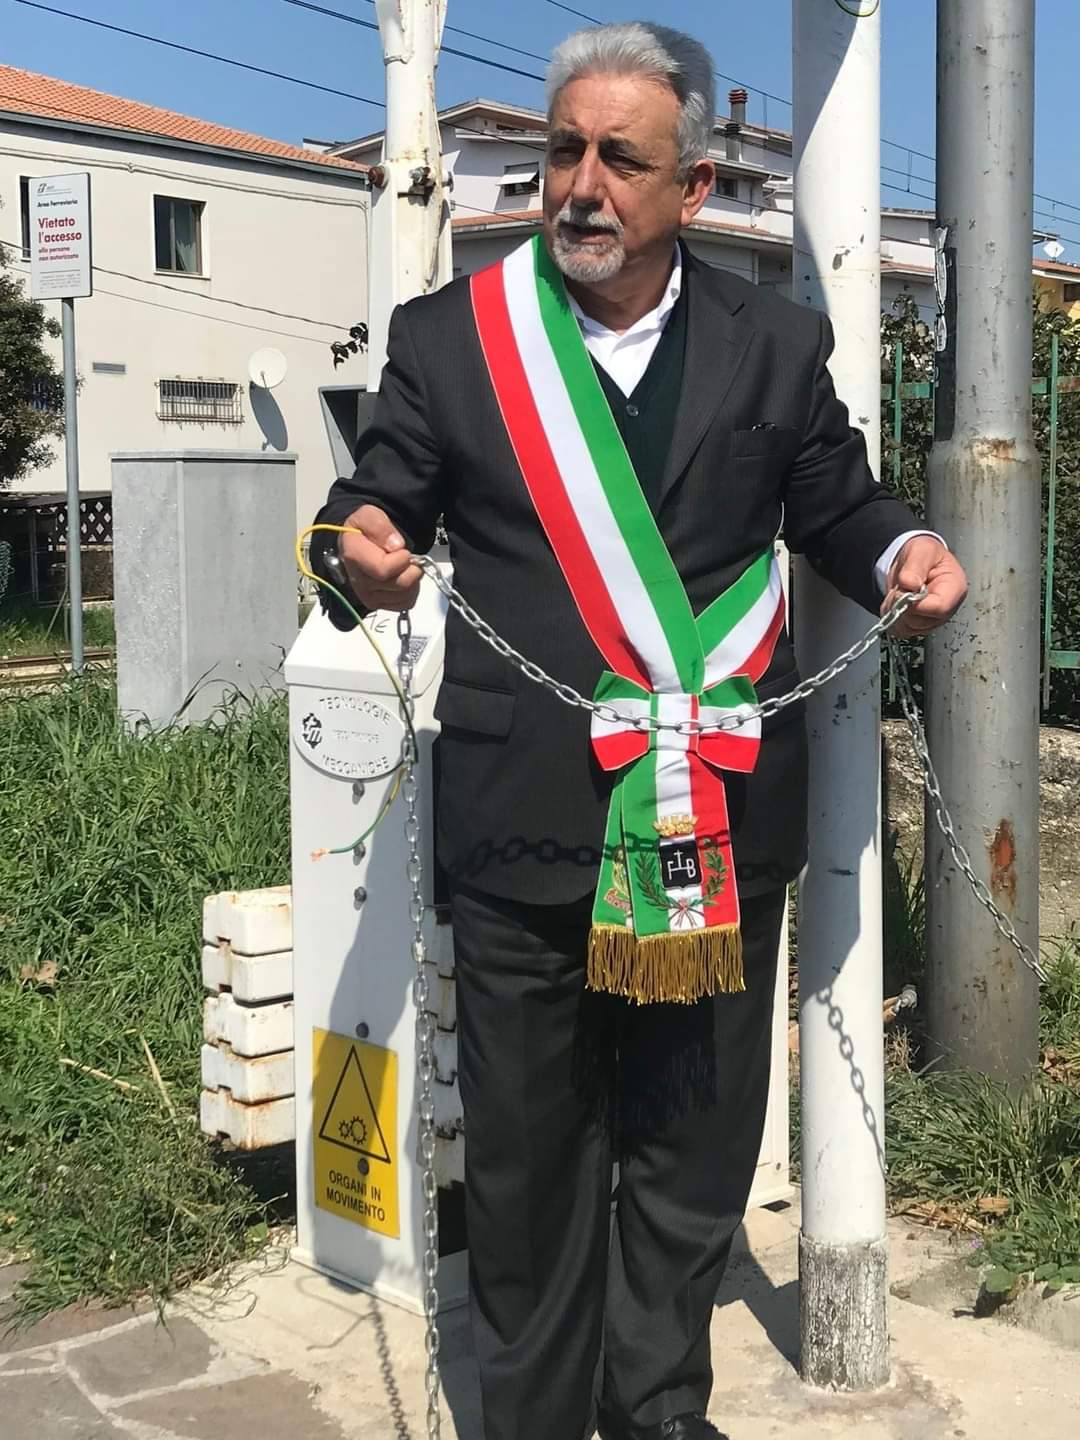 Potenziamento ferrovia Roma-Pescara: il sindaco di San Giovanni Teatino si incatena ad un passaggio a livello contro il progetto